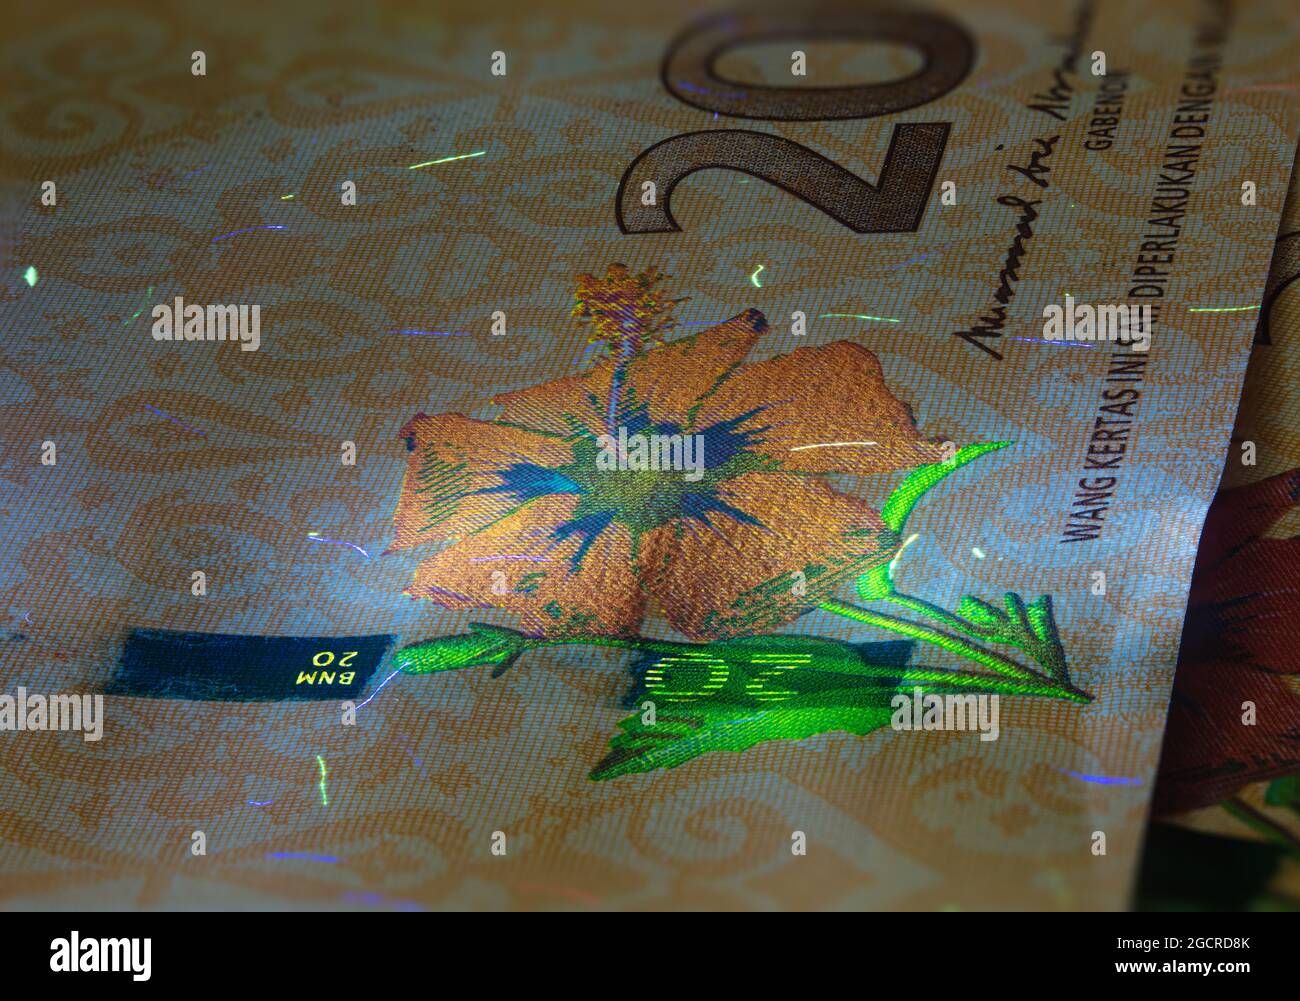 Macro photographie de 20 ringgit malaisien avec lumière de fluor. Gros plan extrême de RM20 Malaisie. Capture nette de l'hibiscus sur le billet de banque. Le rouge Banque D'Images